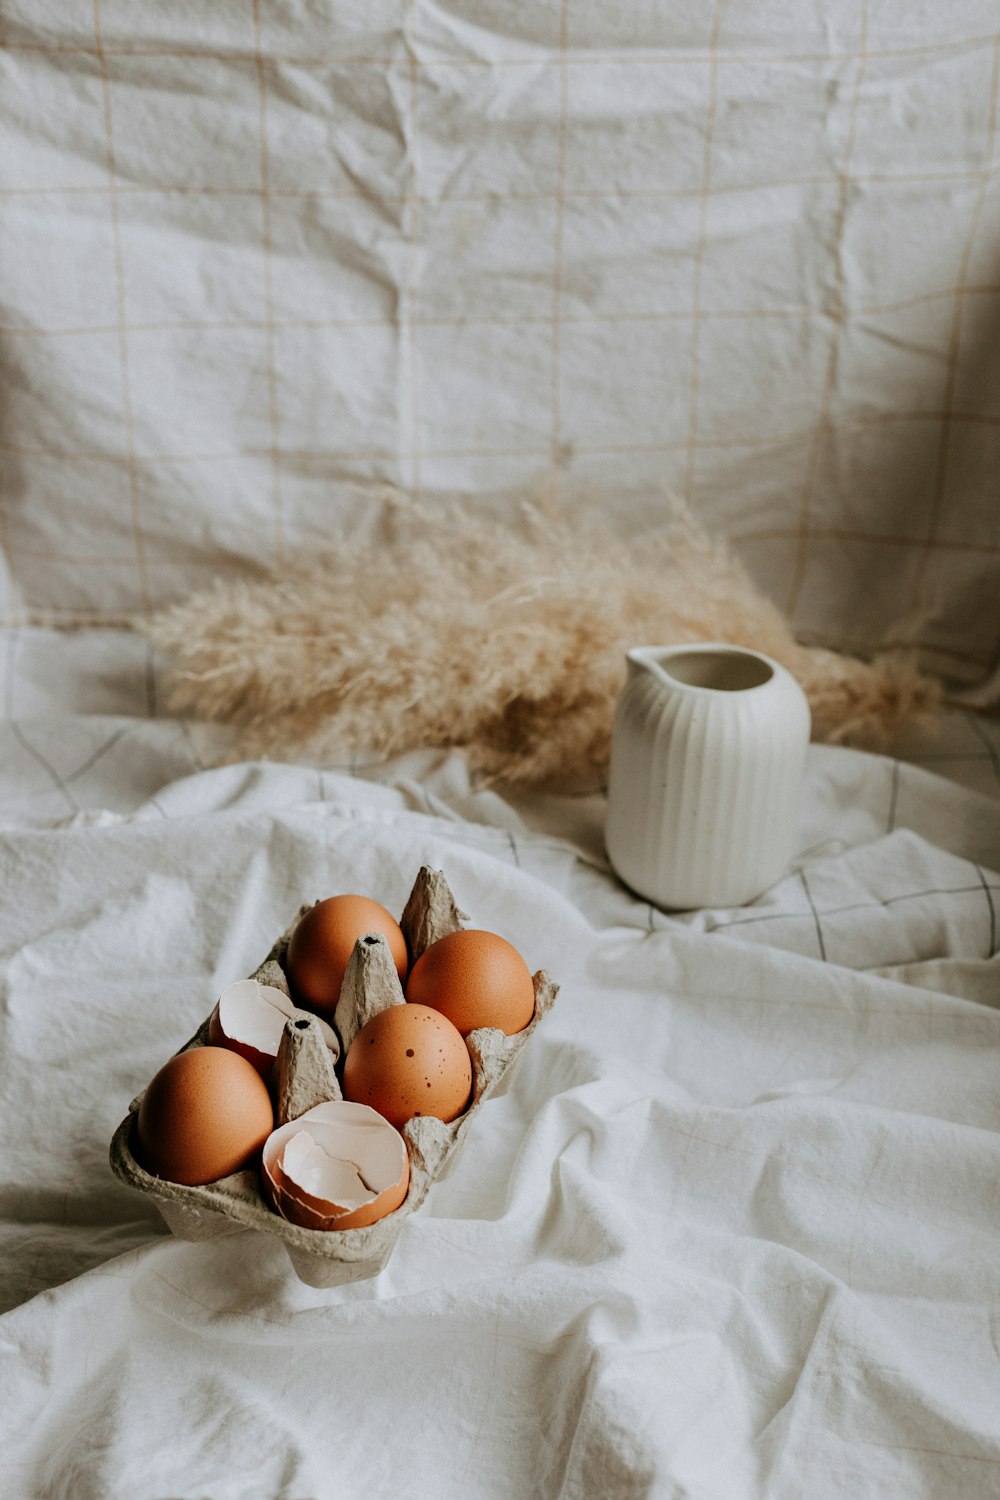 brown eggs on white textile